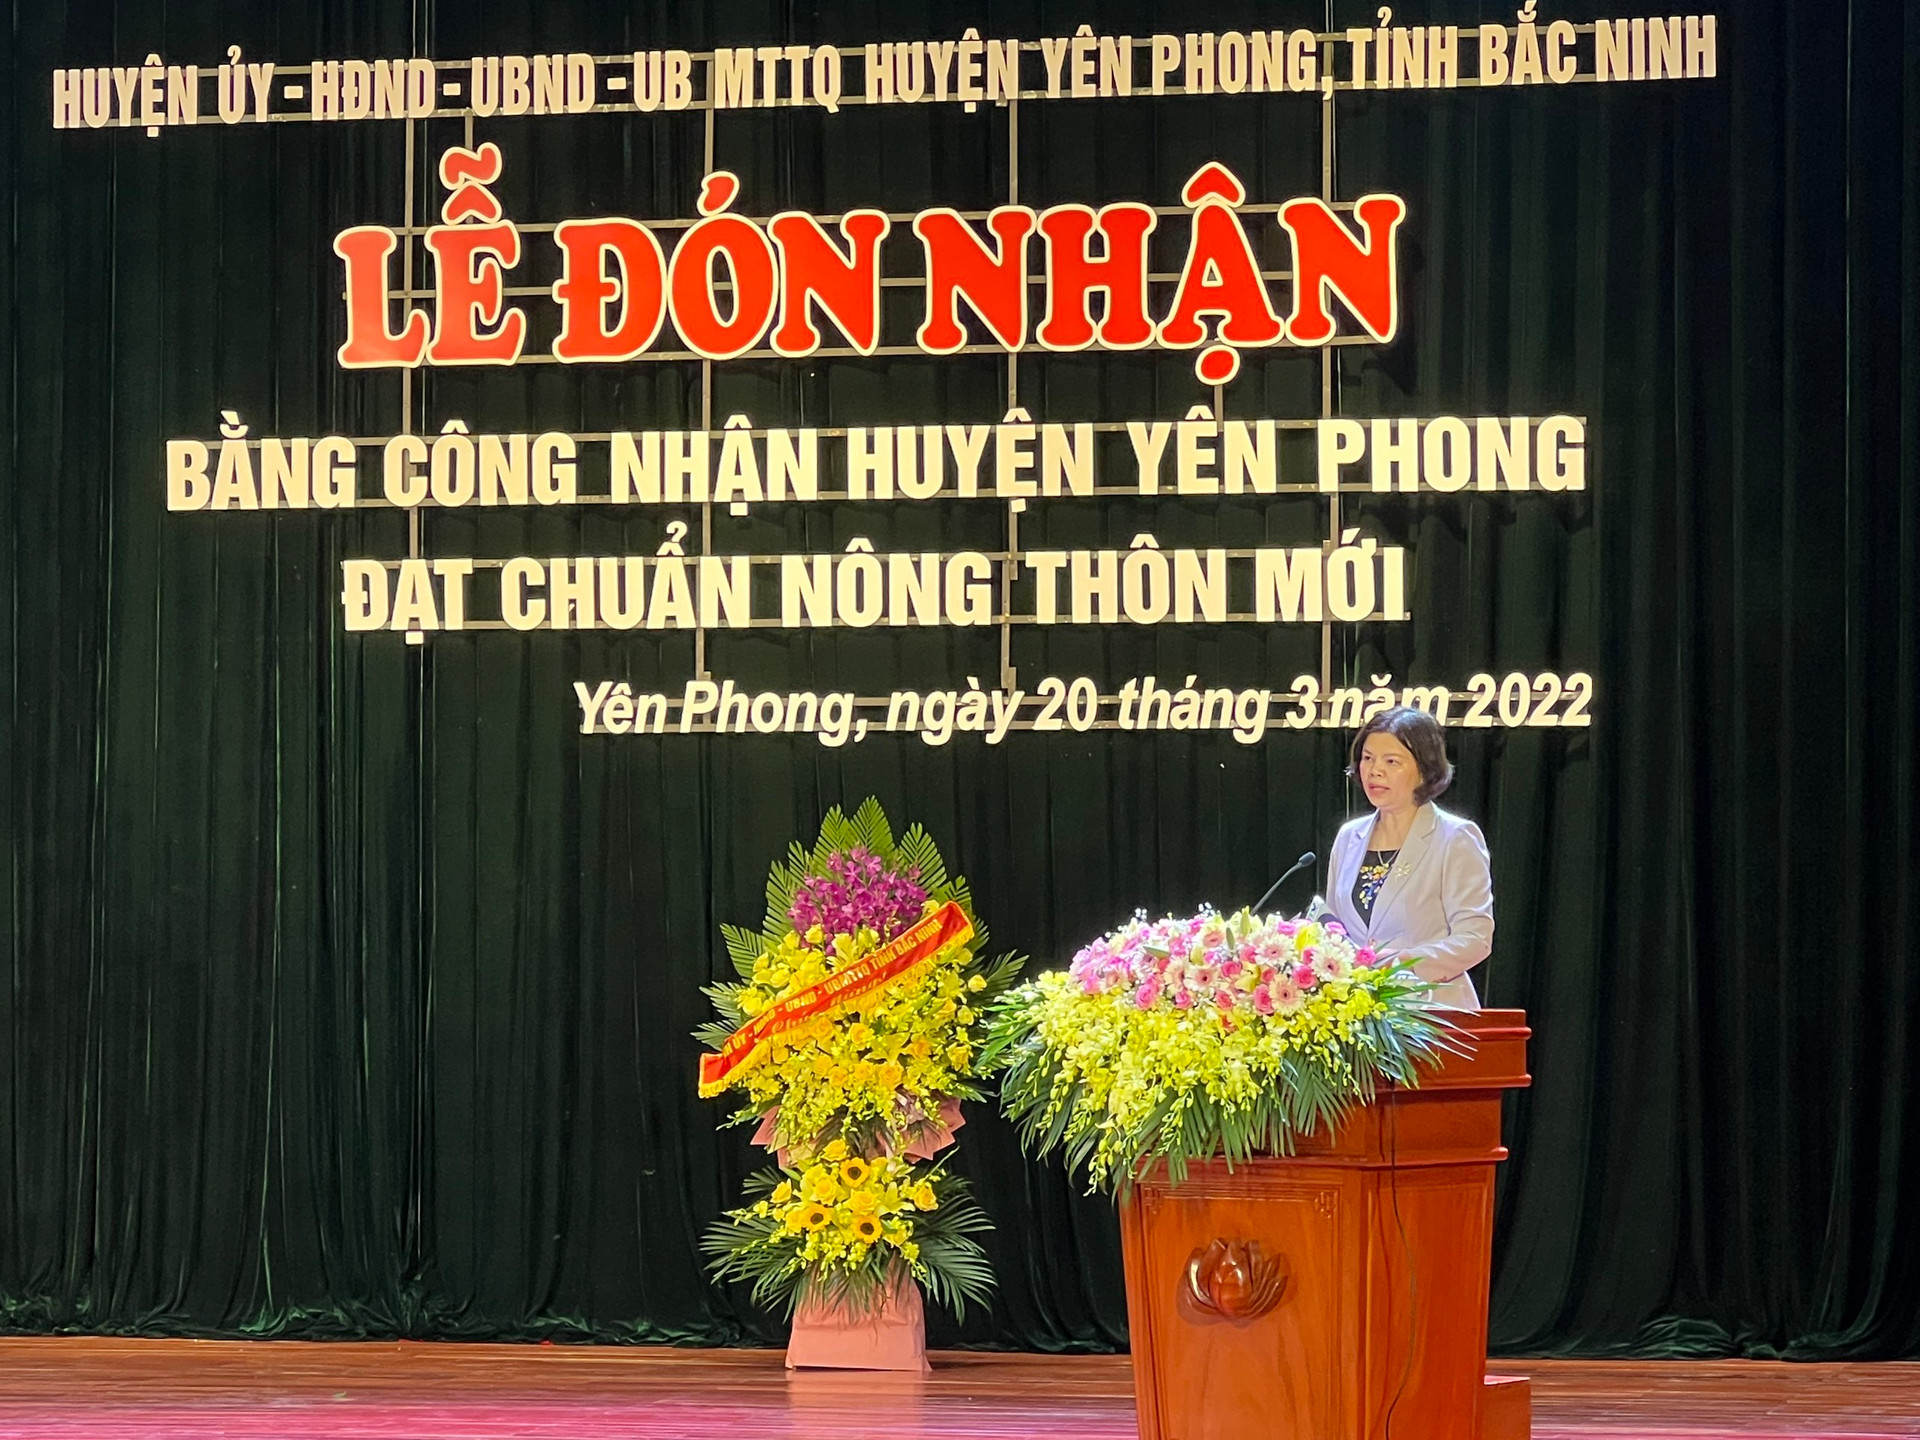 Đồng chí Nguyễn Hương Giang, Chủ tịch UBND tỉnh Bắc Ninh phát biểu chỉ đạo tại Lễ đón nhận Bằng công nhận huyện Yên Phong đạt chuẩn nông thôn mới năm 2020 của Thủ tướng Chính phủ. Ảnh Đỗ Tươi.